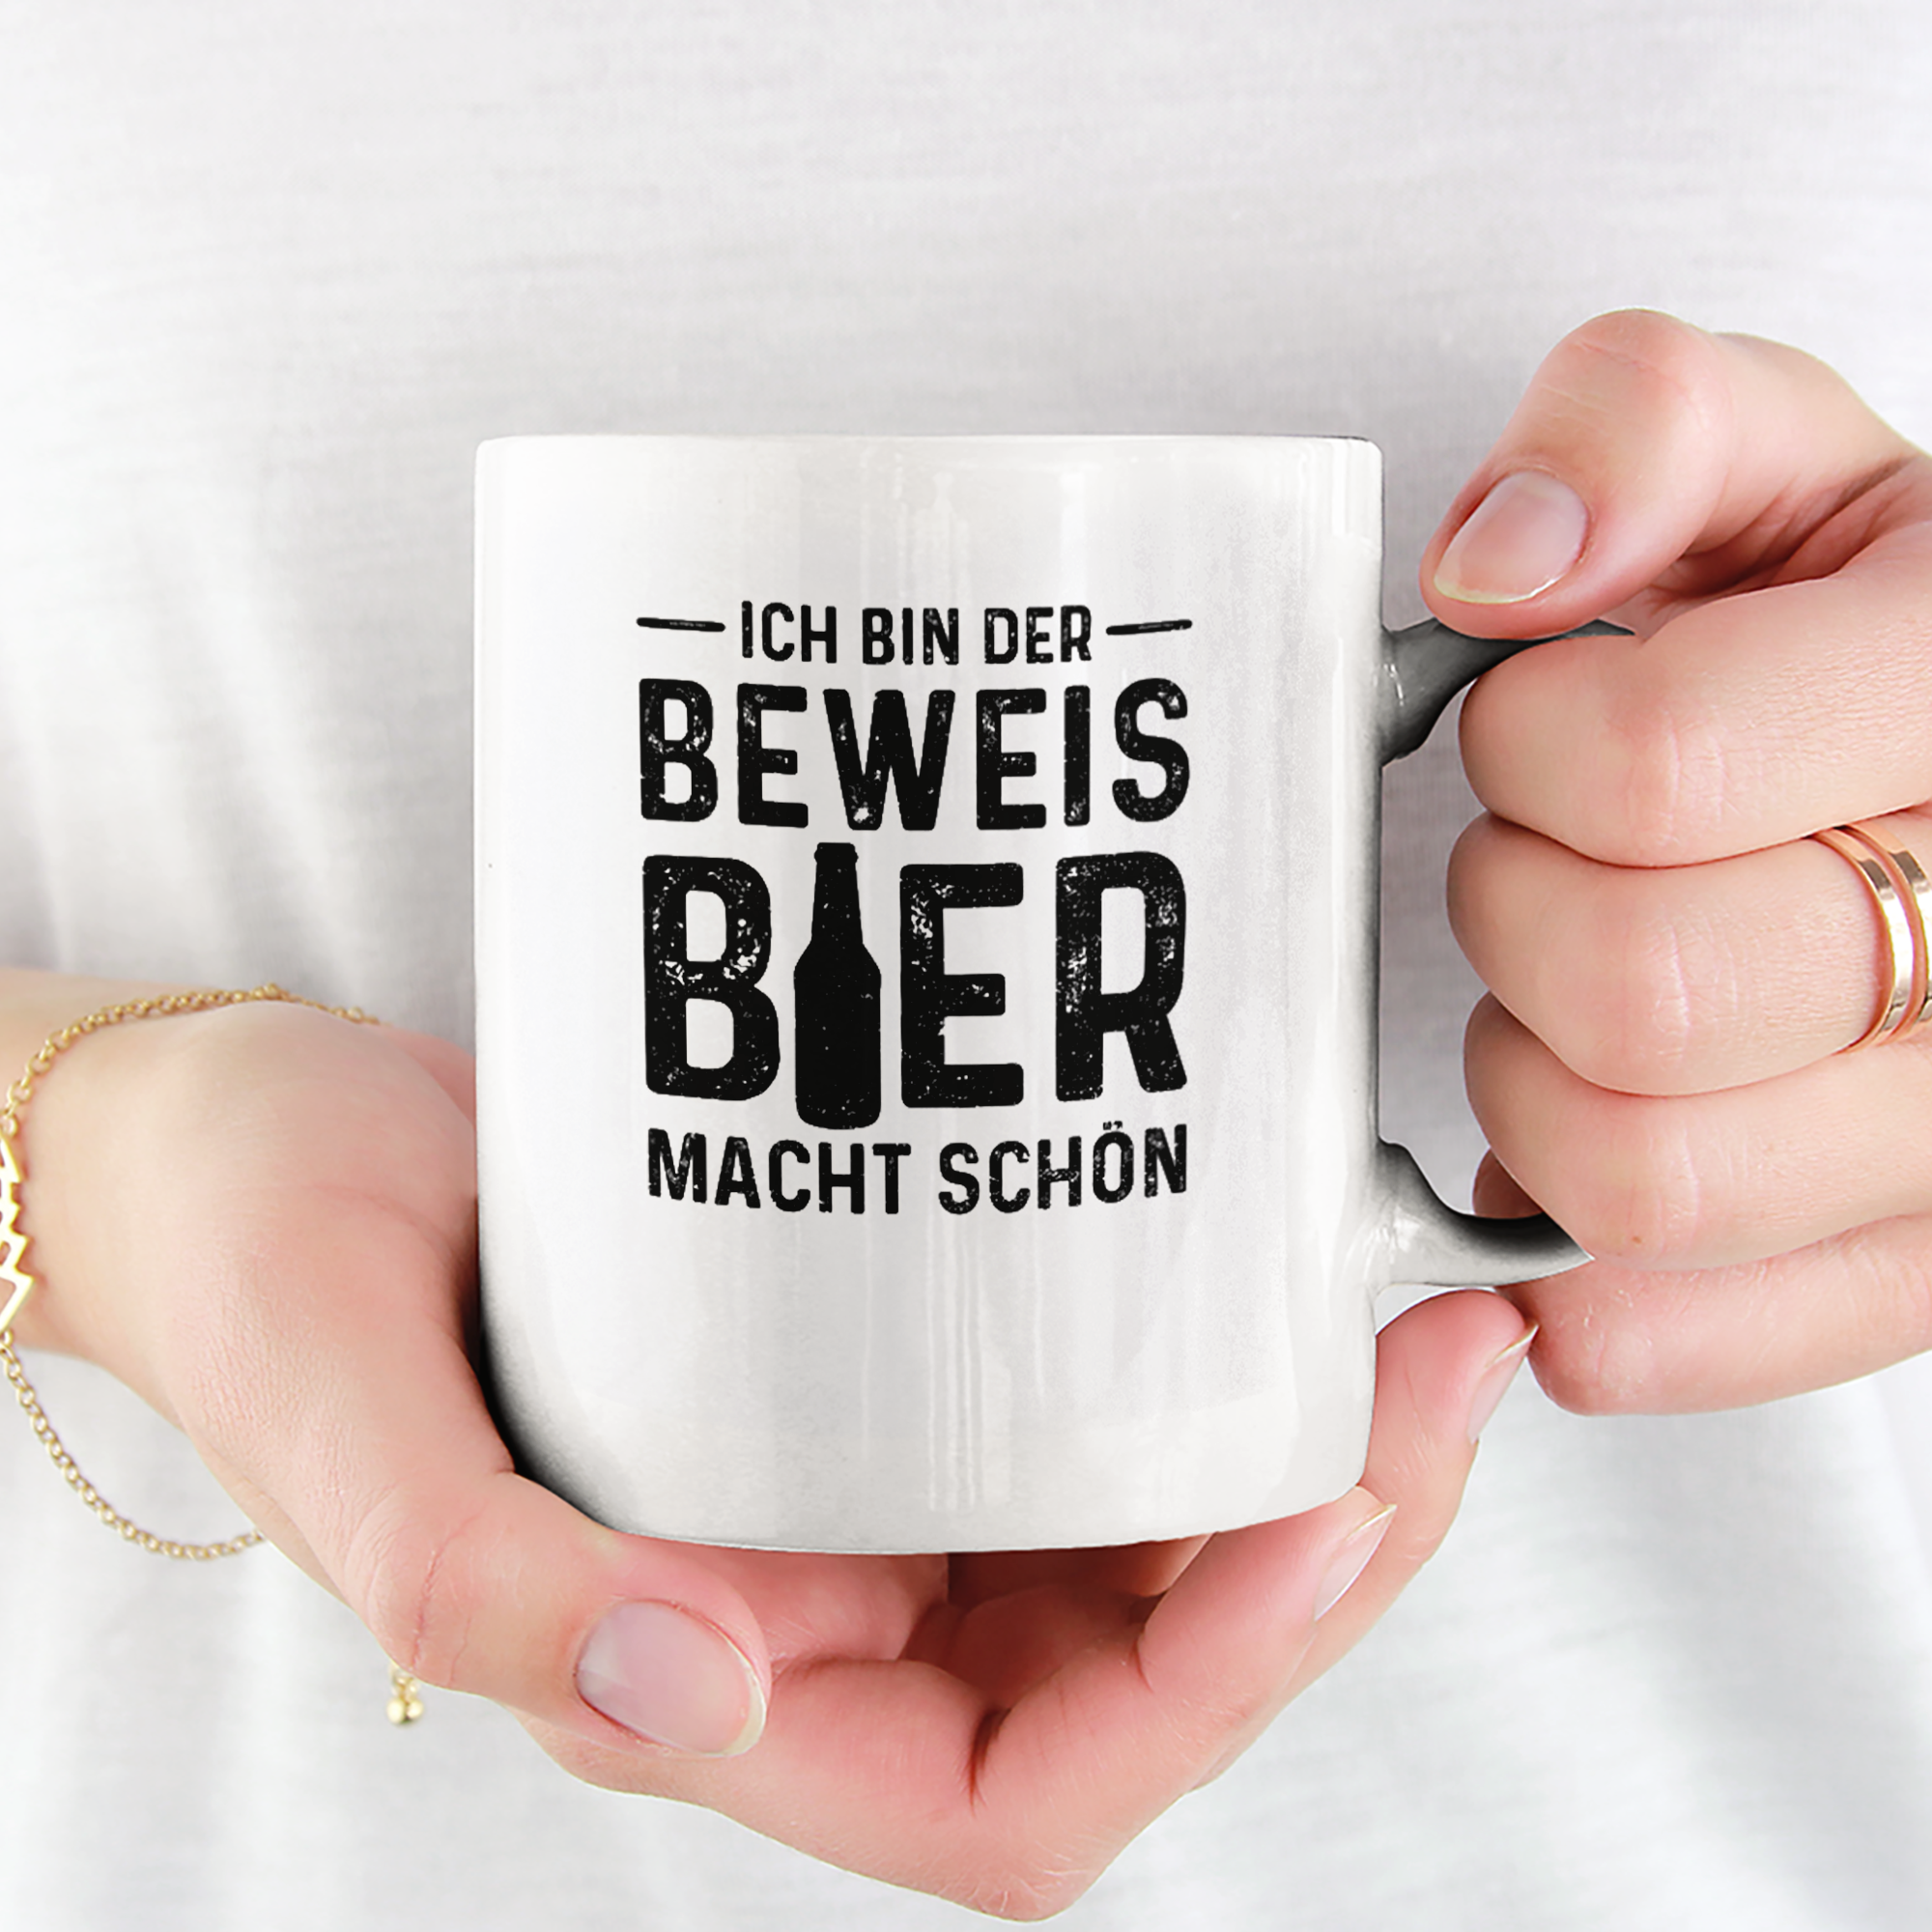 Ich Bin Der Beweis Bier Macht Schön Tasse - DESIGNSBYJNK5.COM